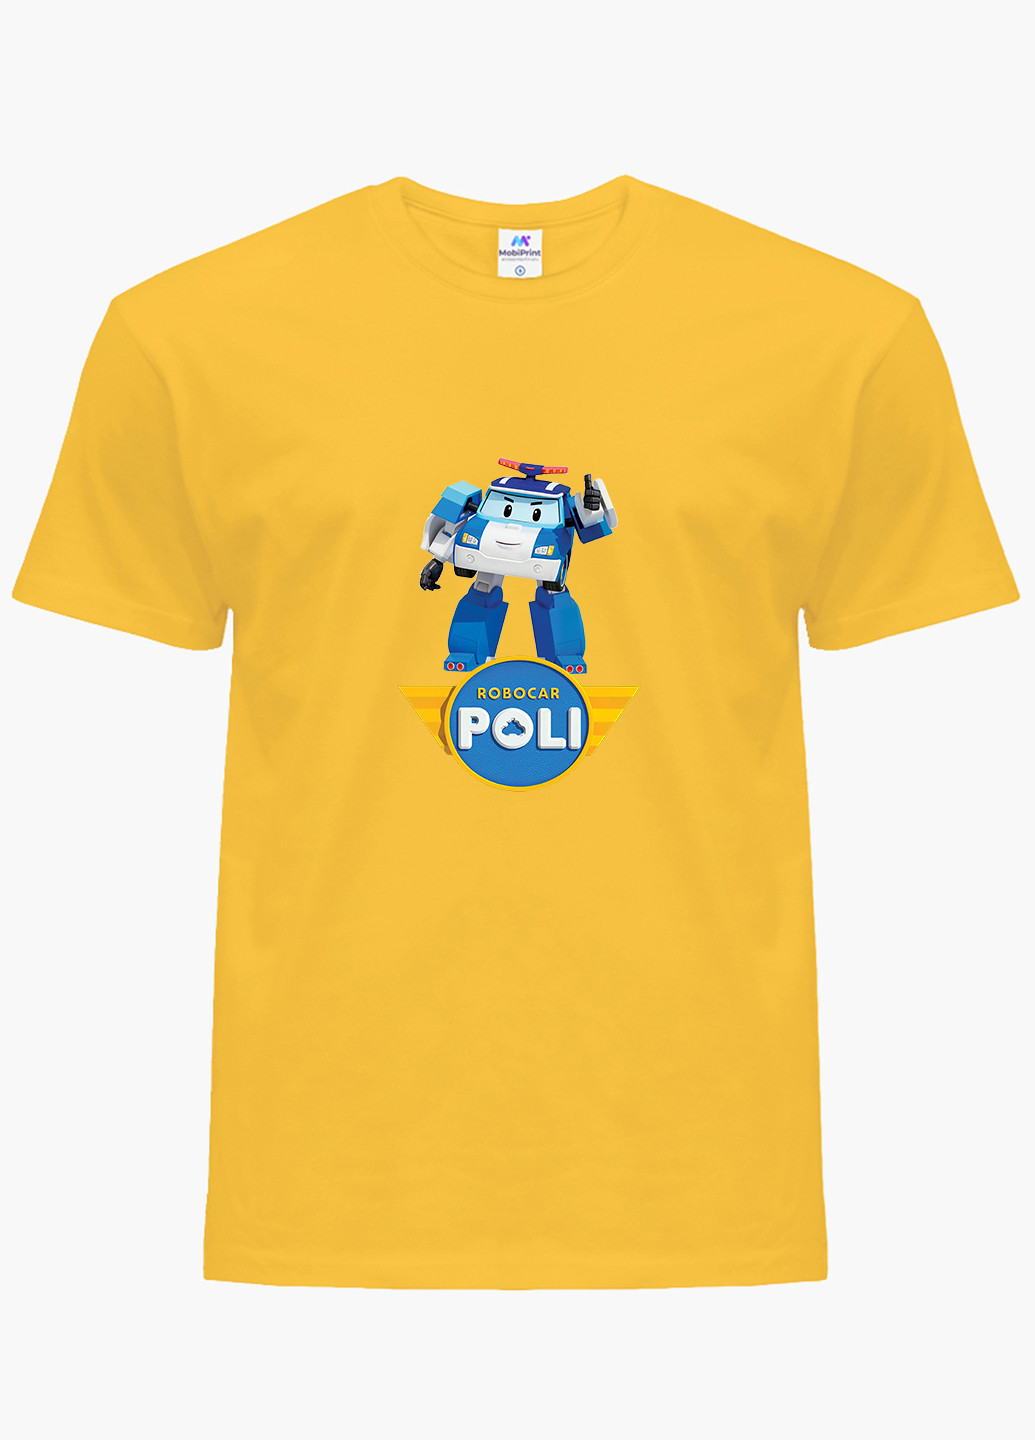 Жовта демісезонна футболка дитяча робокар полі (robocar poli) (9224-1620) MobiPrint